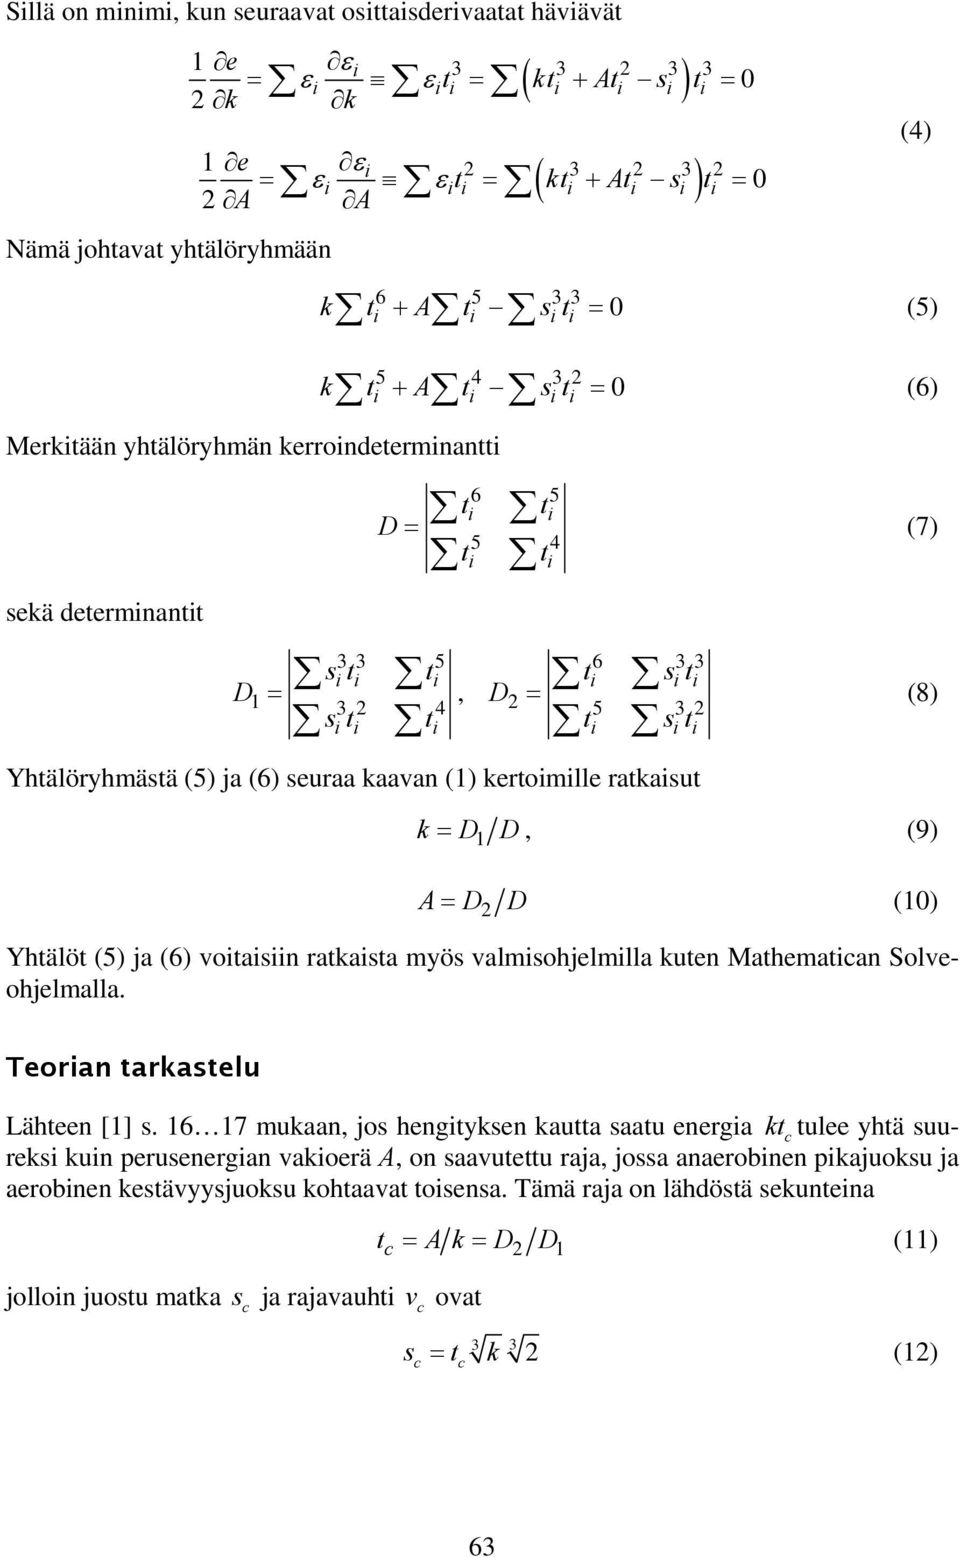 kertomlle ratkasut (7) (8) k = D1 D, (9) A= D2 D (10) Yhtälöt (5) ja (6) votasn ratkasta myös valmsohjelmlla kuten Mathematan Solveohjelmalla. Teoran tarkastelu Lähteen [1] s.